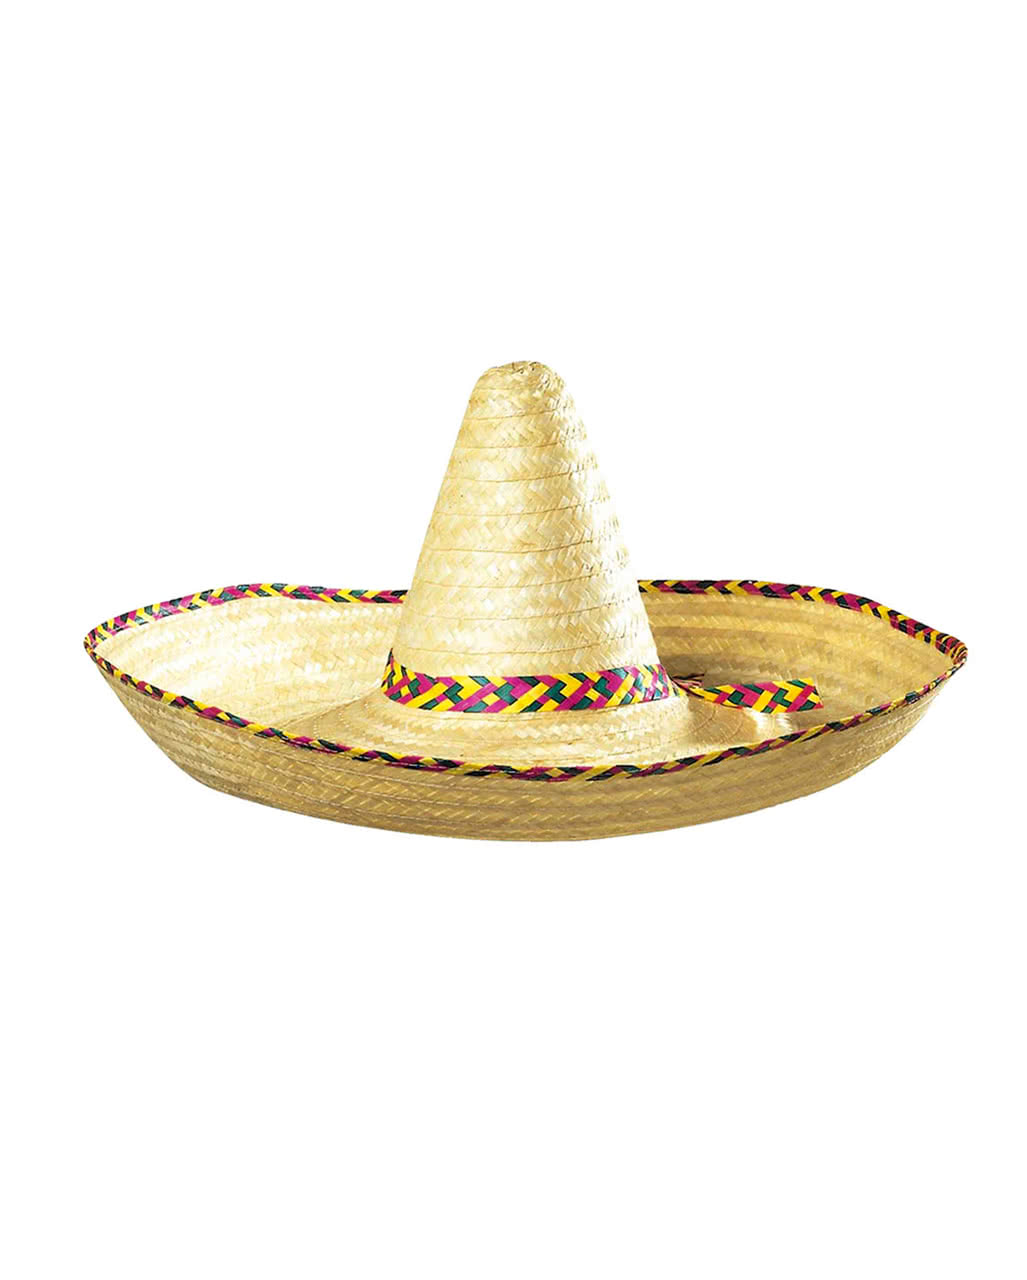 Discokugel trägt einen mexikanischen Sombrero-Hut und Schnurrbart